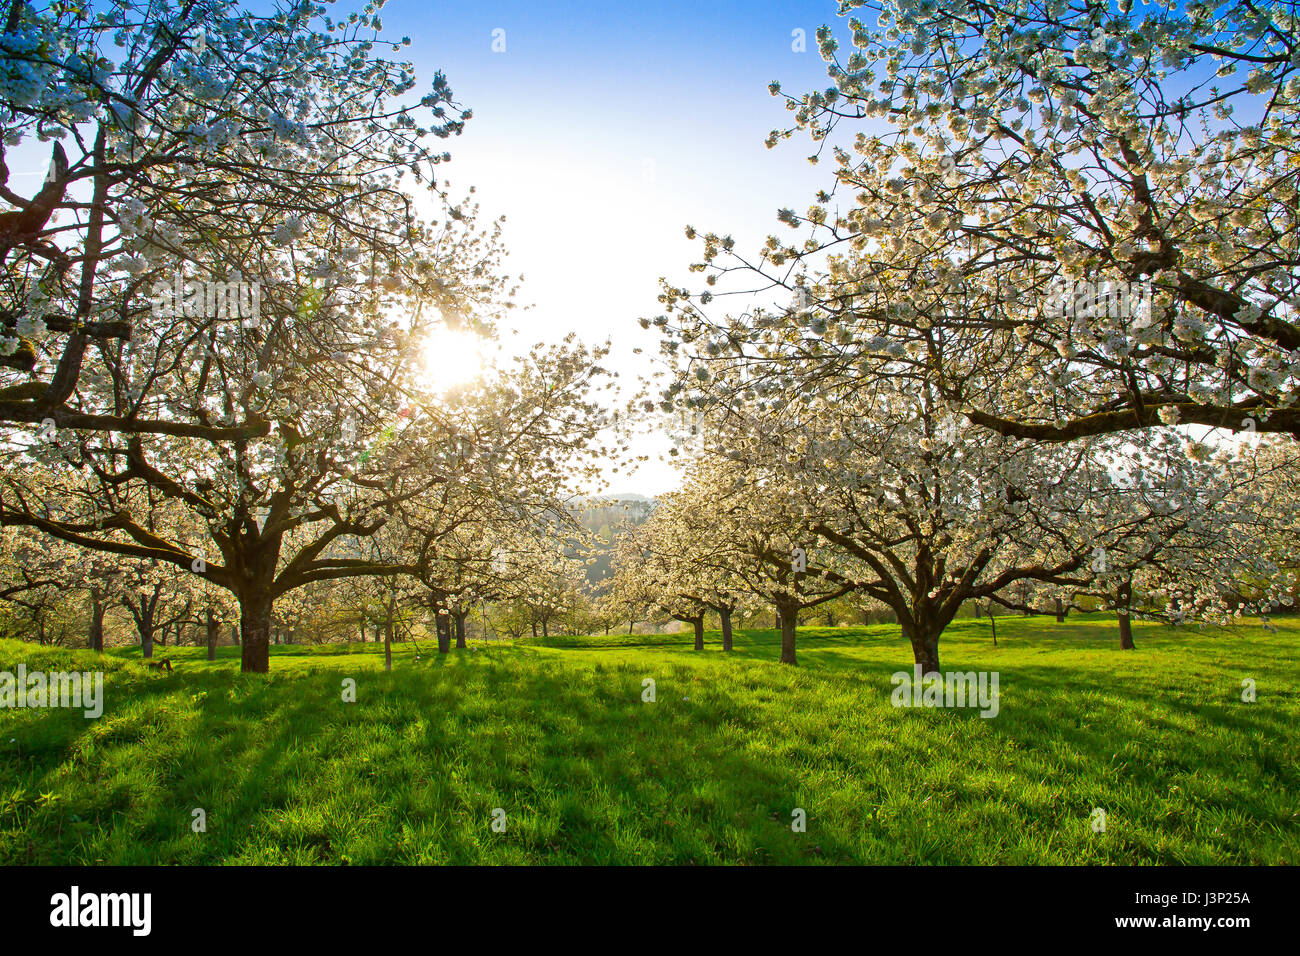 Cherry trees in springtime Stock Photo